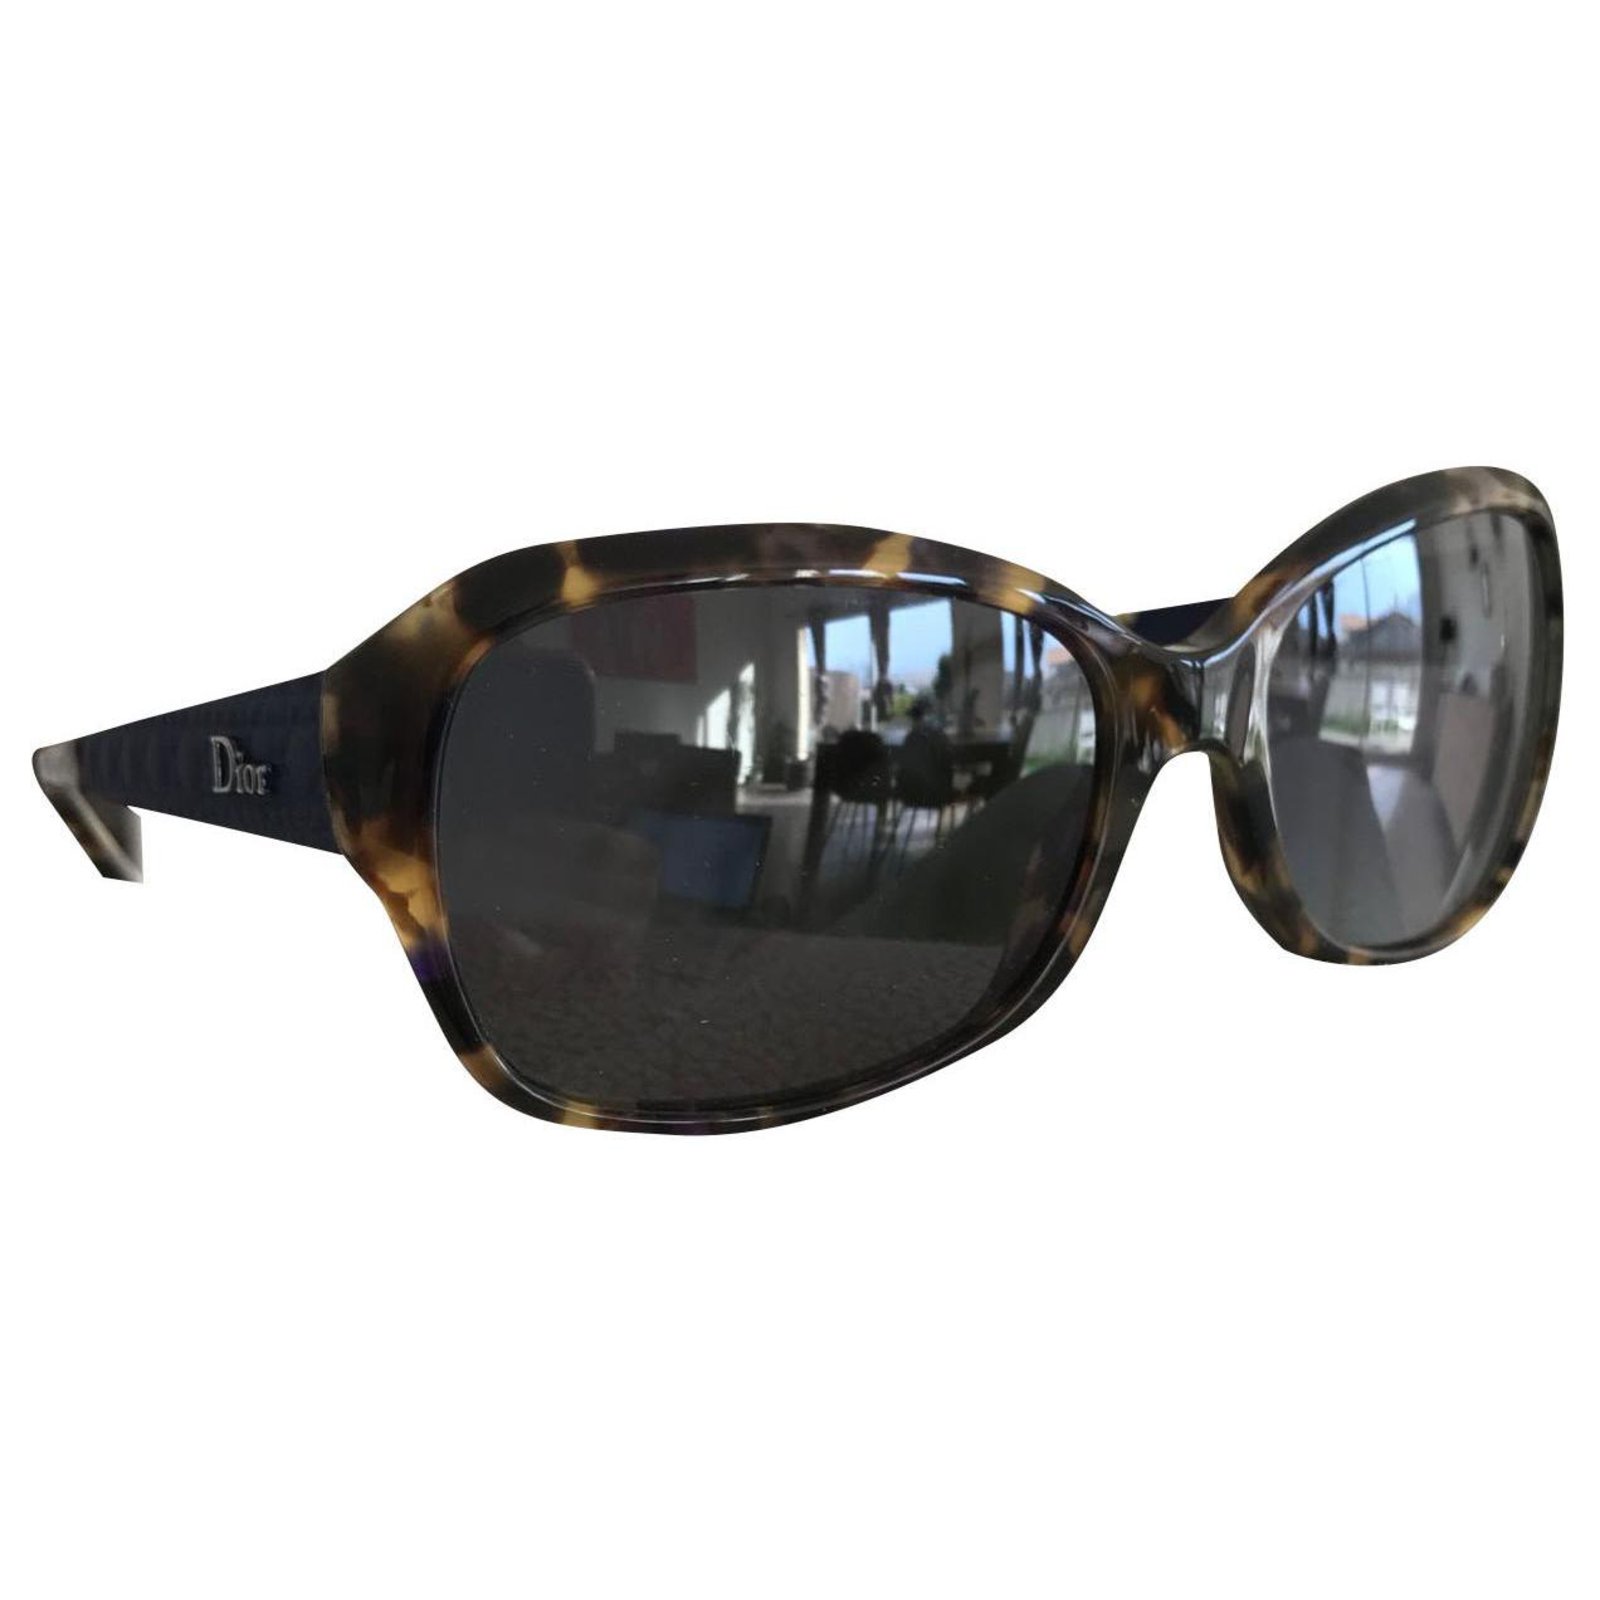 dior coquette 2 sunglasses